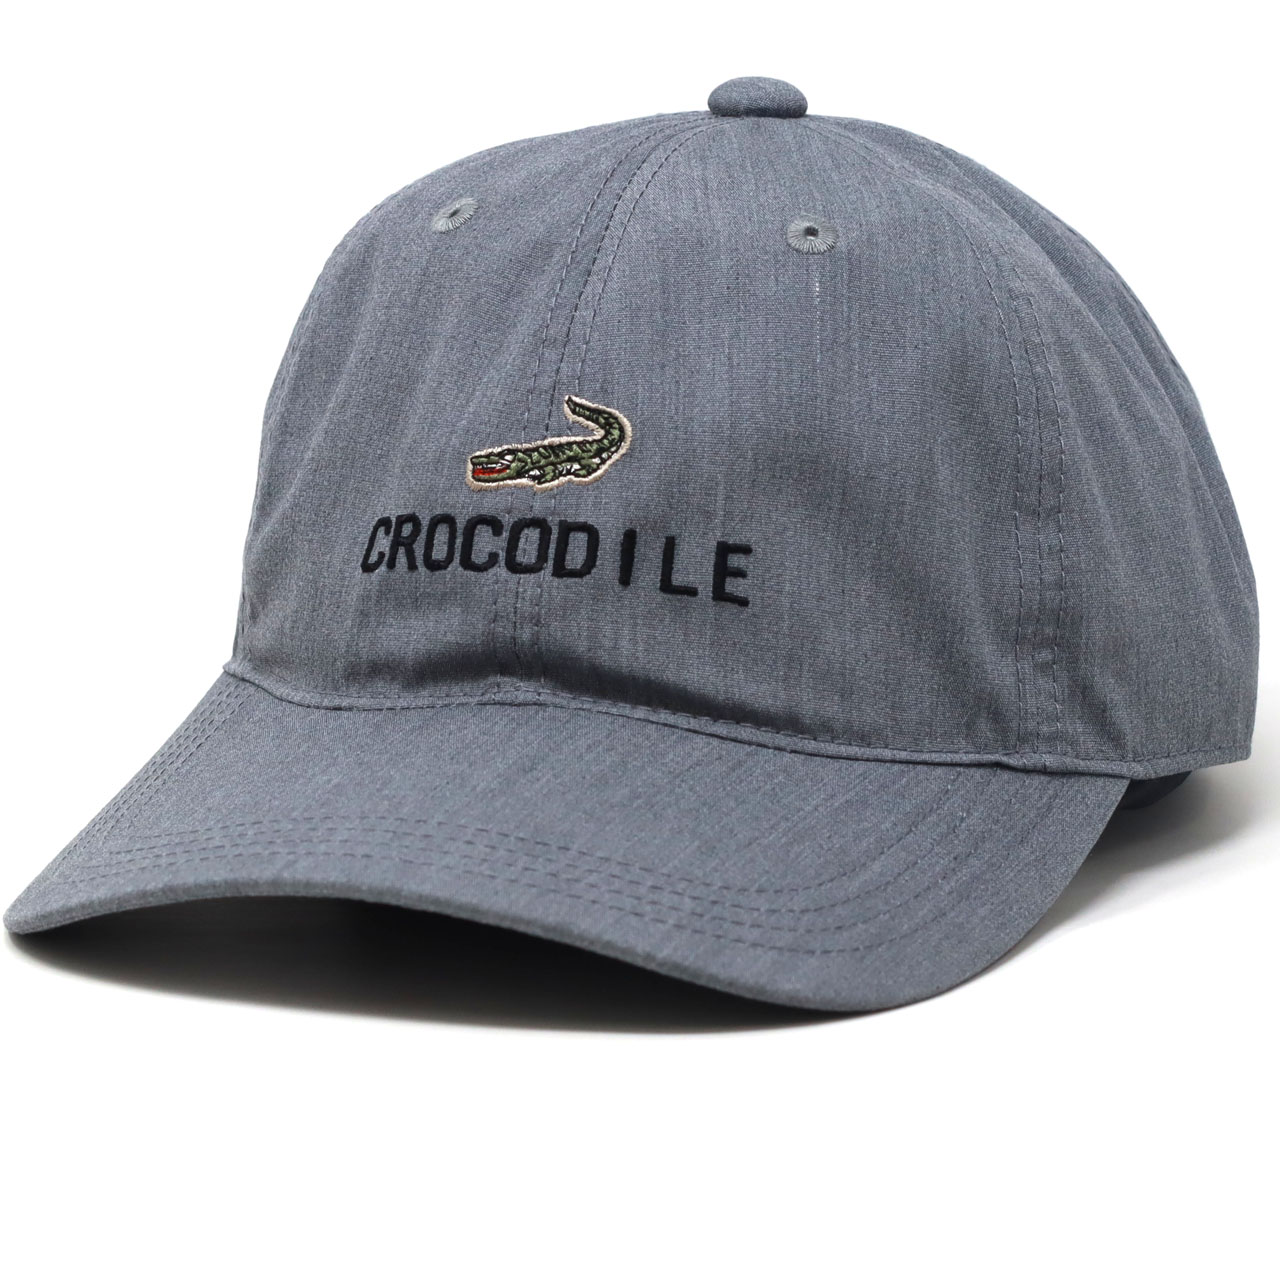 キャップ メンズ エコPUポプリン 帽子 メンズ CROCODILE メンズ 夏の帽子 ギフト キャップ 野球帽 クロコダイル キャップ ブランド  普段使い プレゼント :bx-hc599:ELEHELM帽子通販専門店 通販 